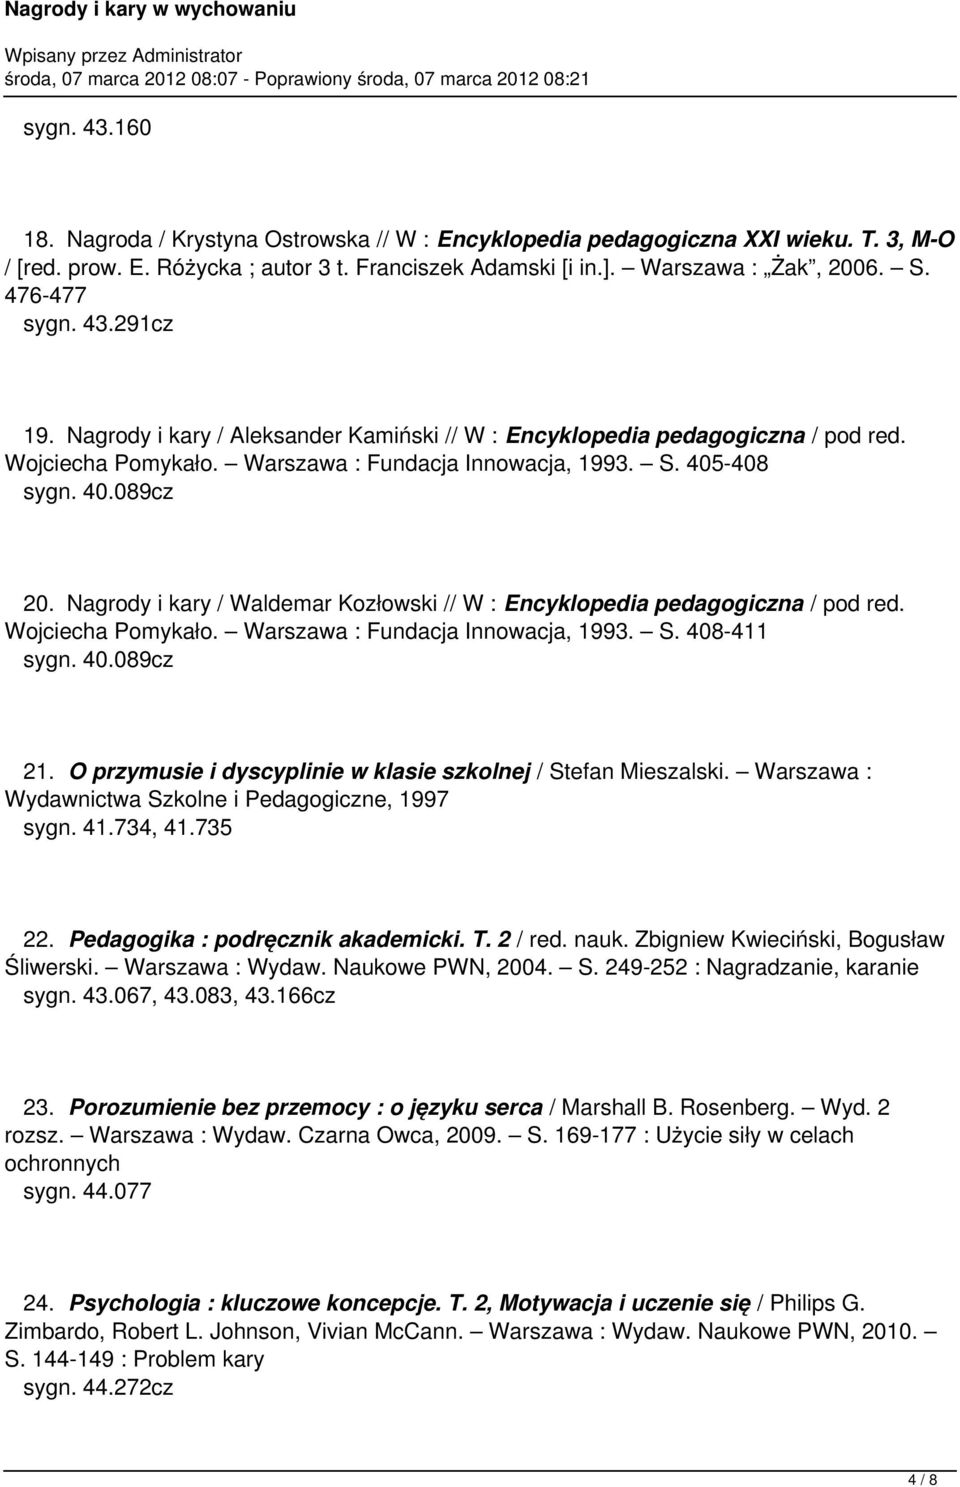 Nagrody i kary / Waldemar Kozłowski // W : Encyklopedia pedagogiczna / pod red. Wojciecha Pomykało. Warszawa : Fundacja Innowacja, 1993. S. 408-411 sygn. 40.089cz 21.